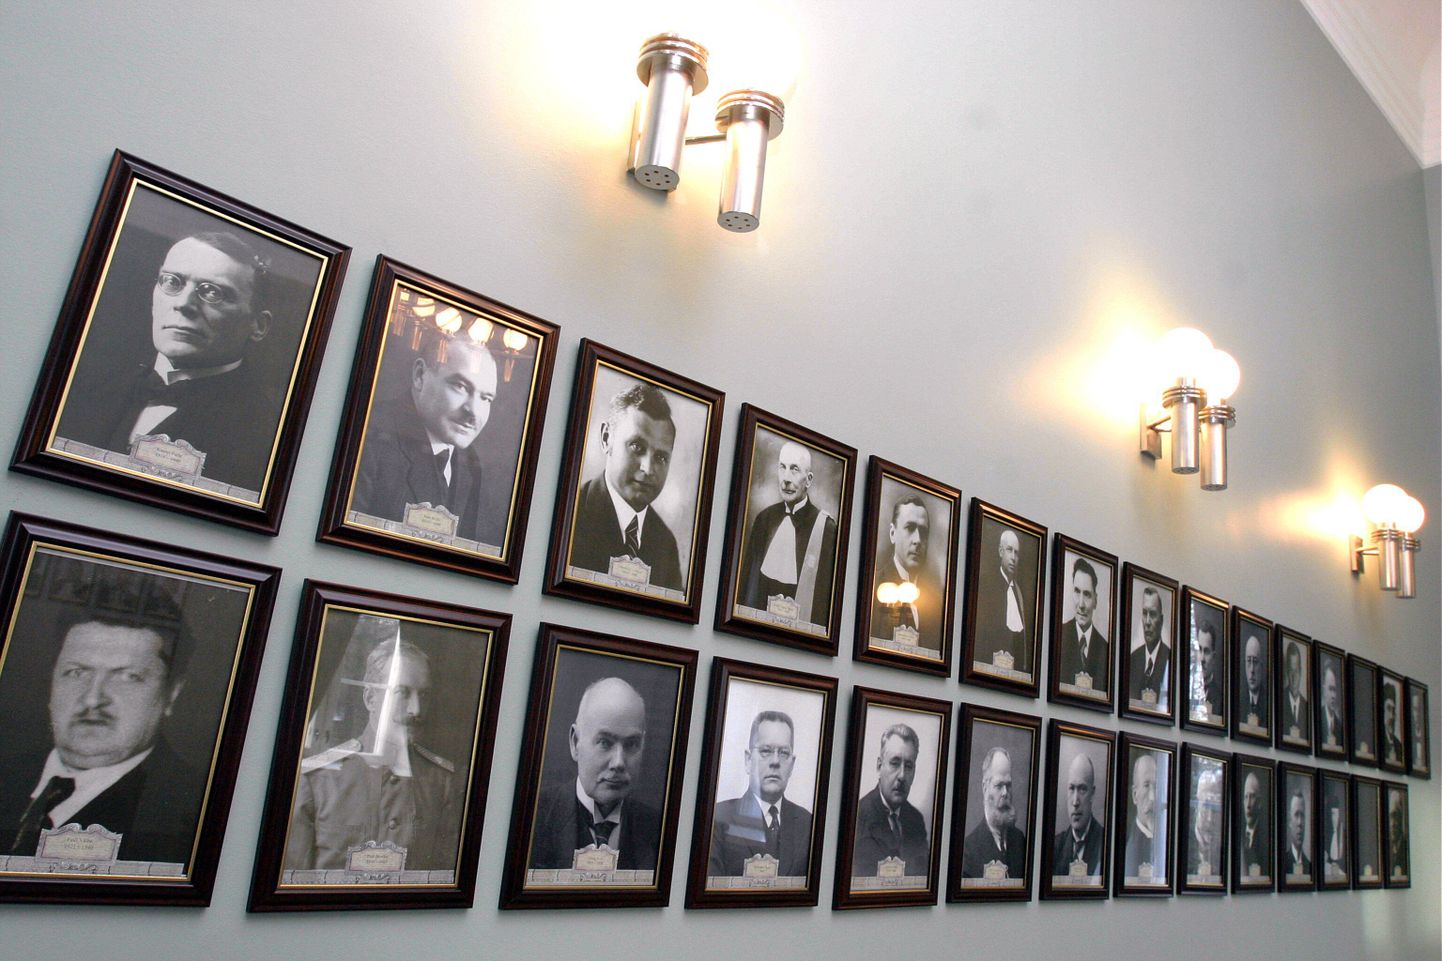 Riigikohtunike portreed riigikohtu üldkogu saali seinal.